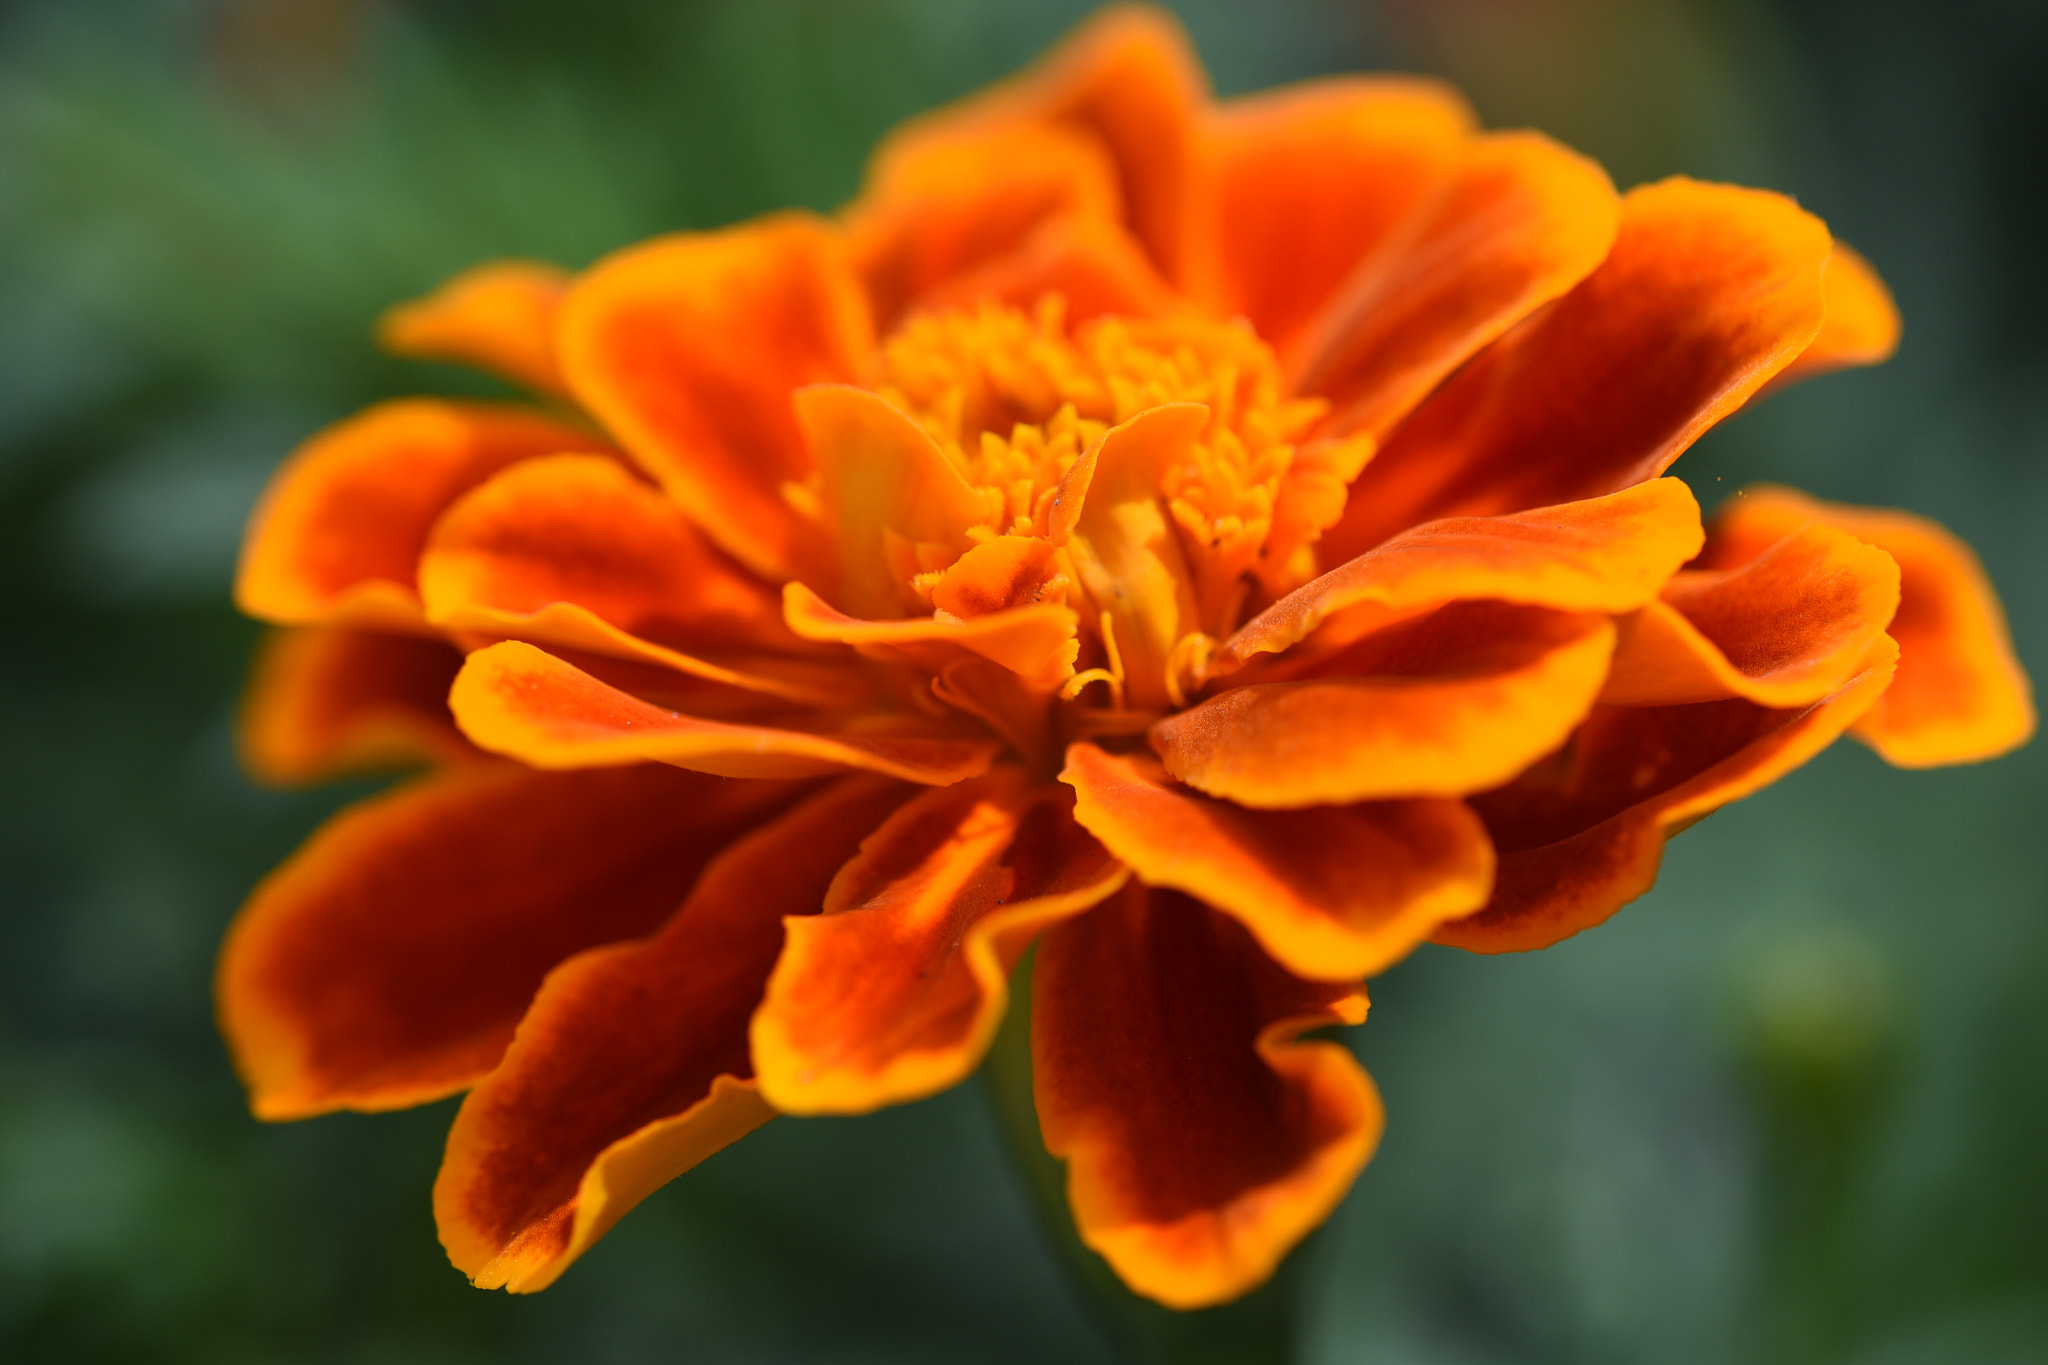 Nikon D750 + Nikon AF Micro-Nikkor 200mm F4D ED-IF sample photo. Orange color flower photography